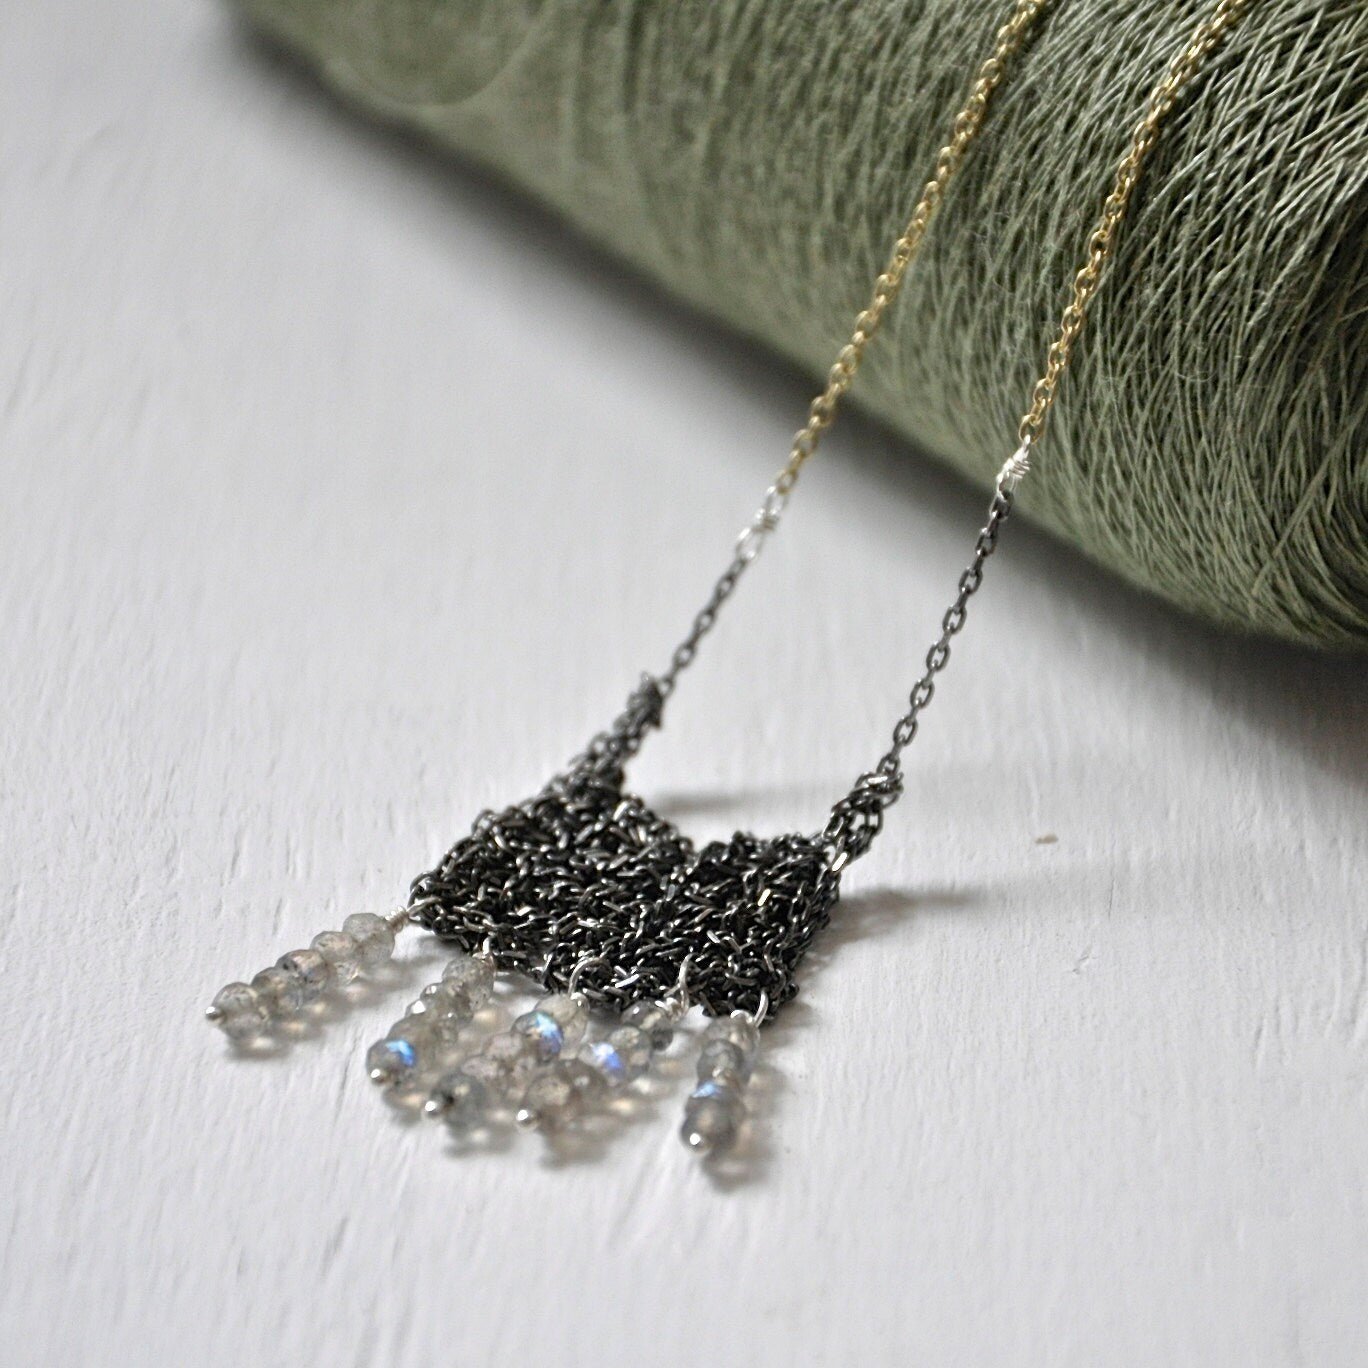 Square Crochet Pendant Necklace